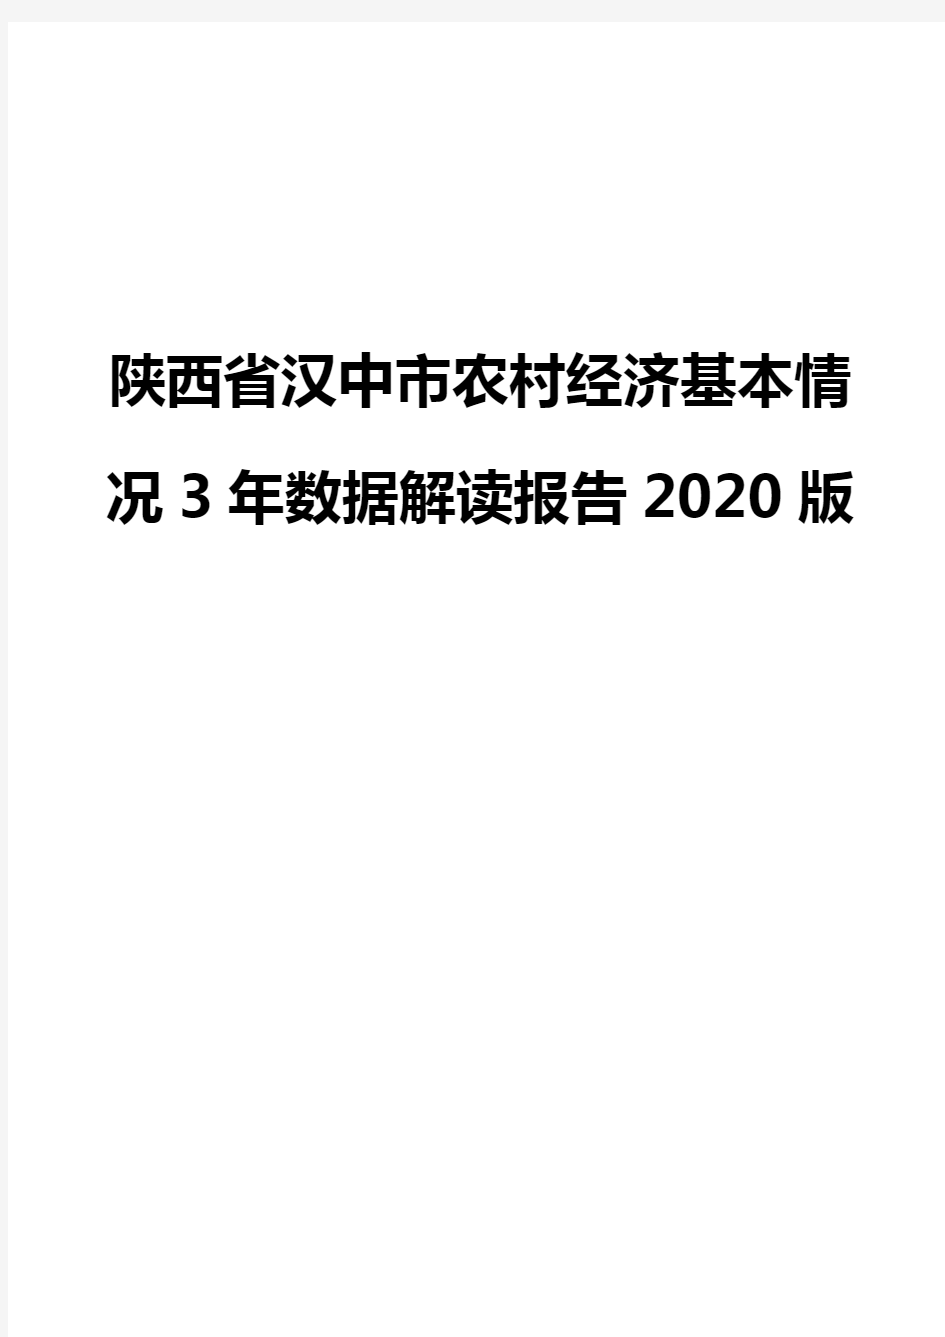 陕西省汉中市农村经济基本情况3年数据解读报告2020版